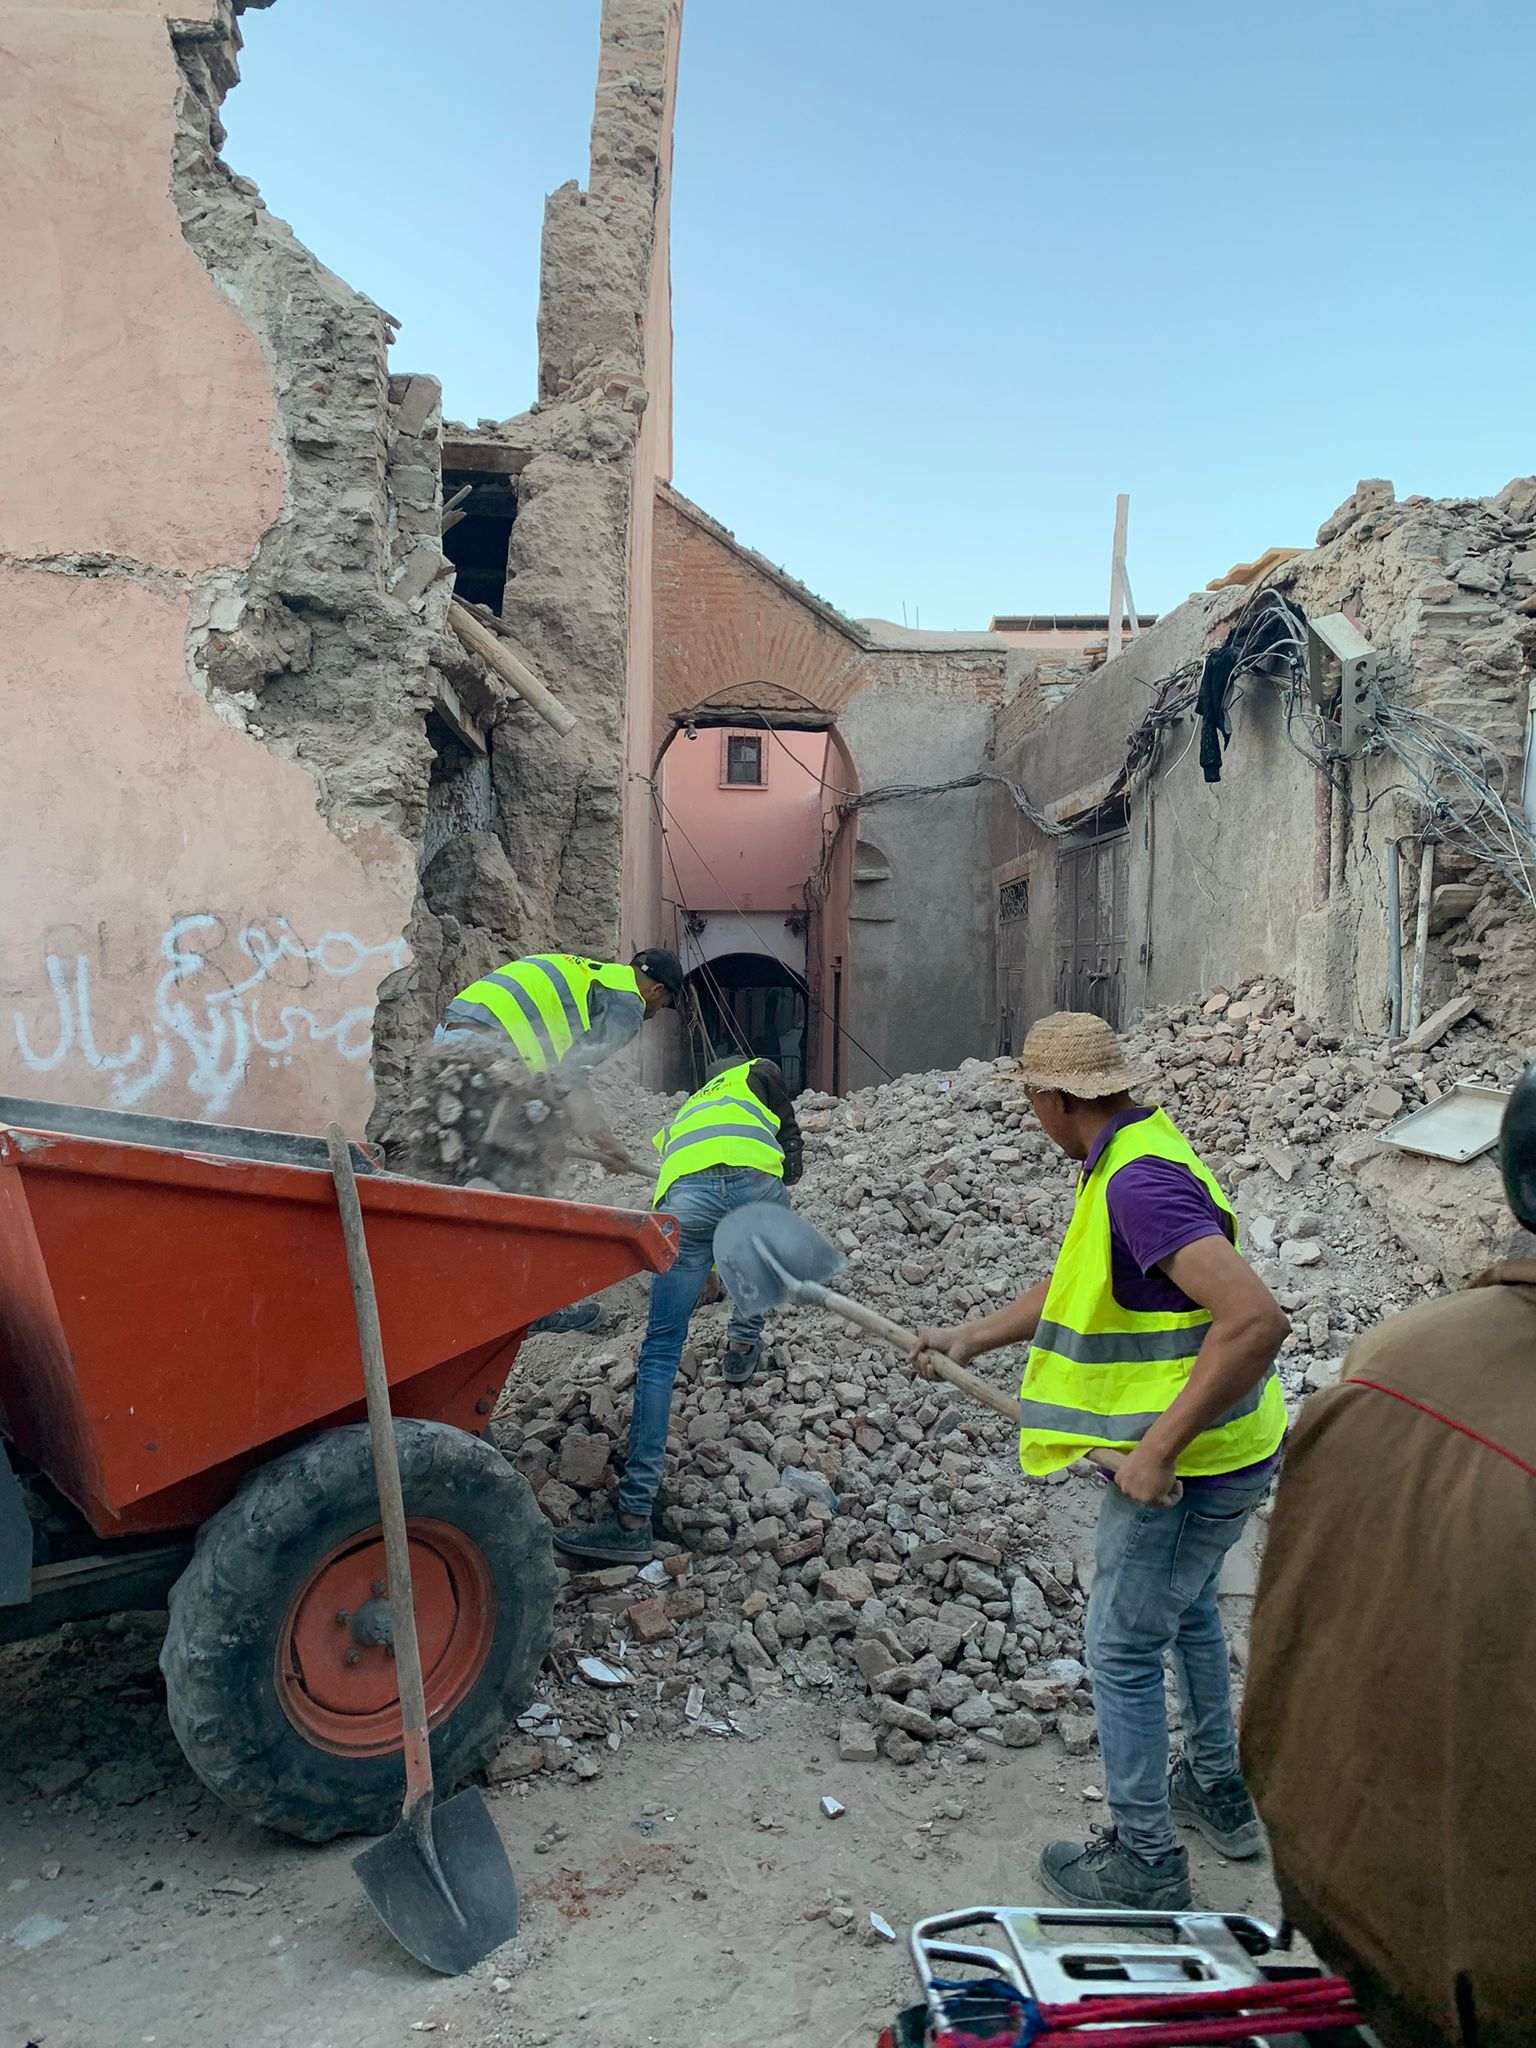 El terremoto de Marrakech sobre el terreno: "El edificio parecía de papel"